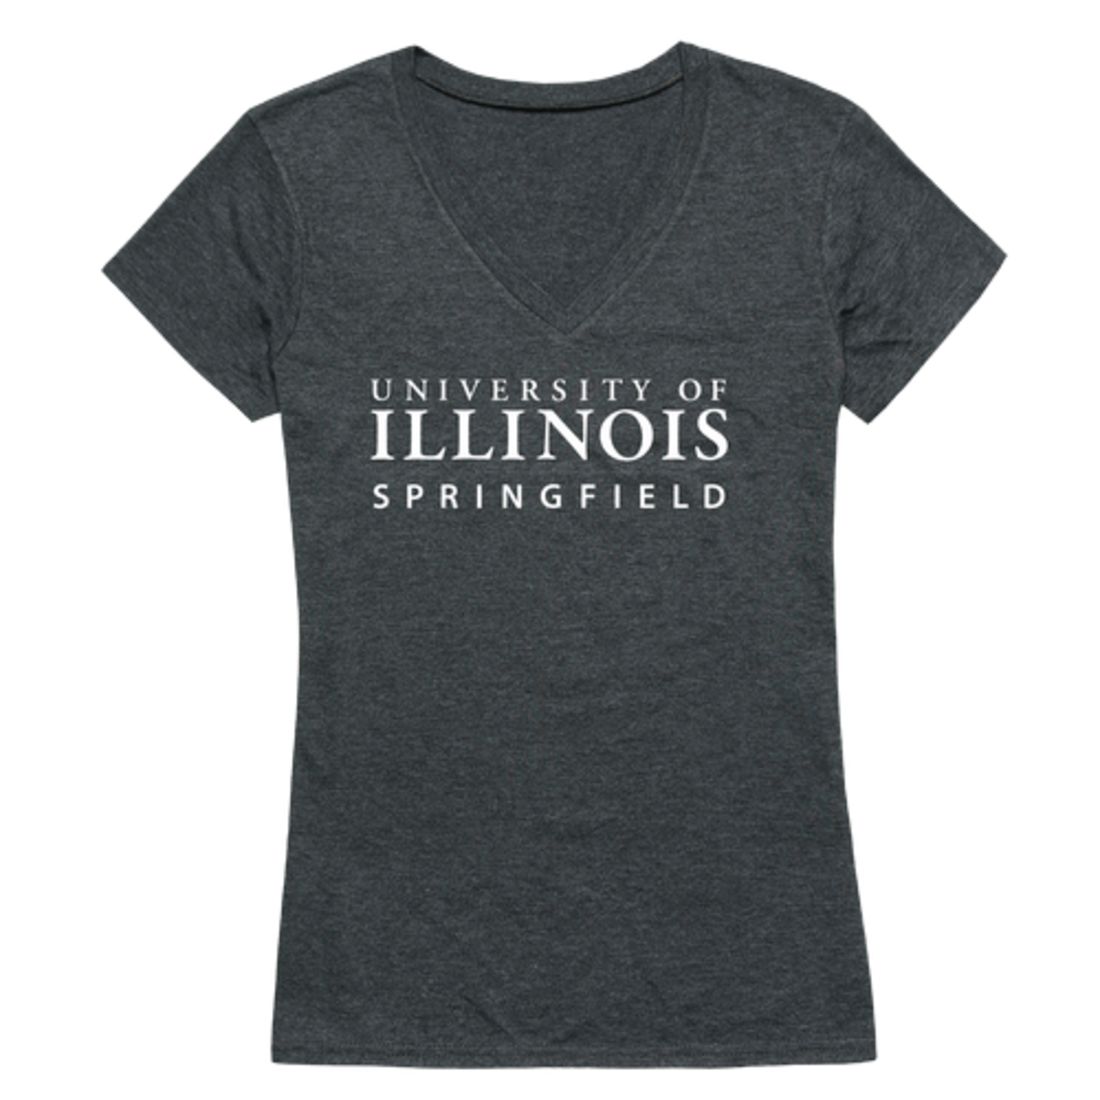 University of Illinois Springfield Prairie Stars Womens Institutional T-Shirt Tee